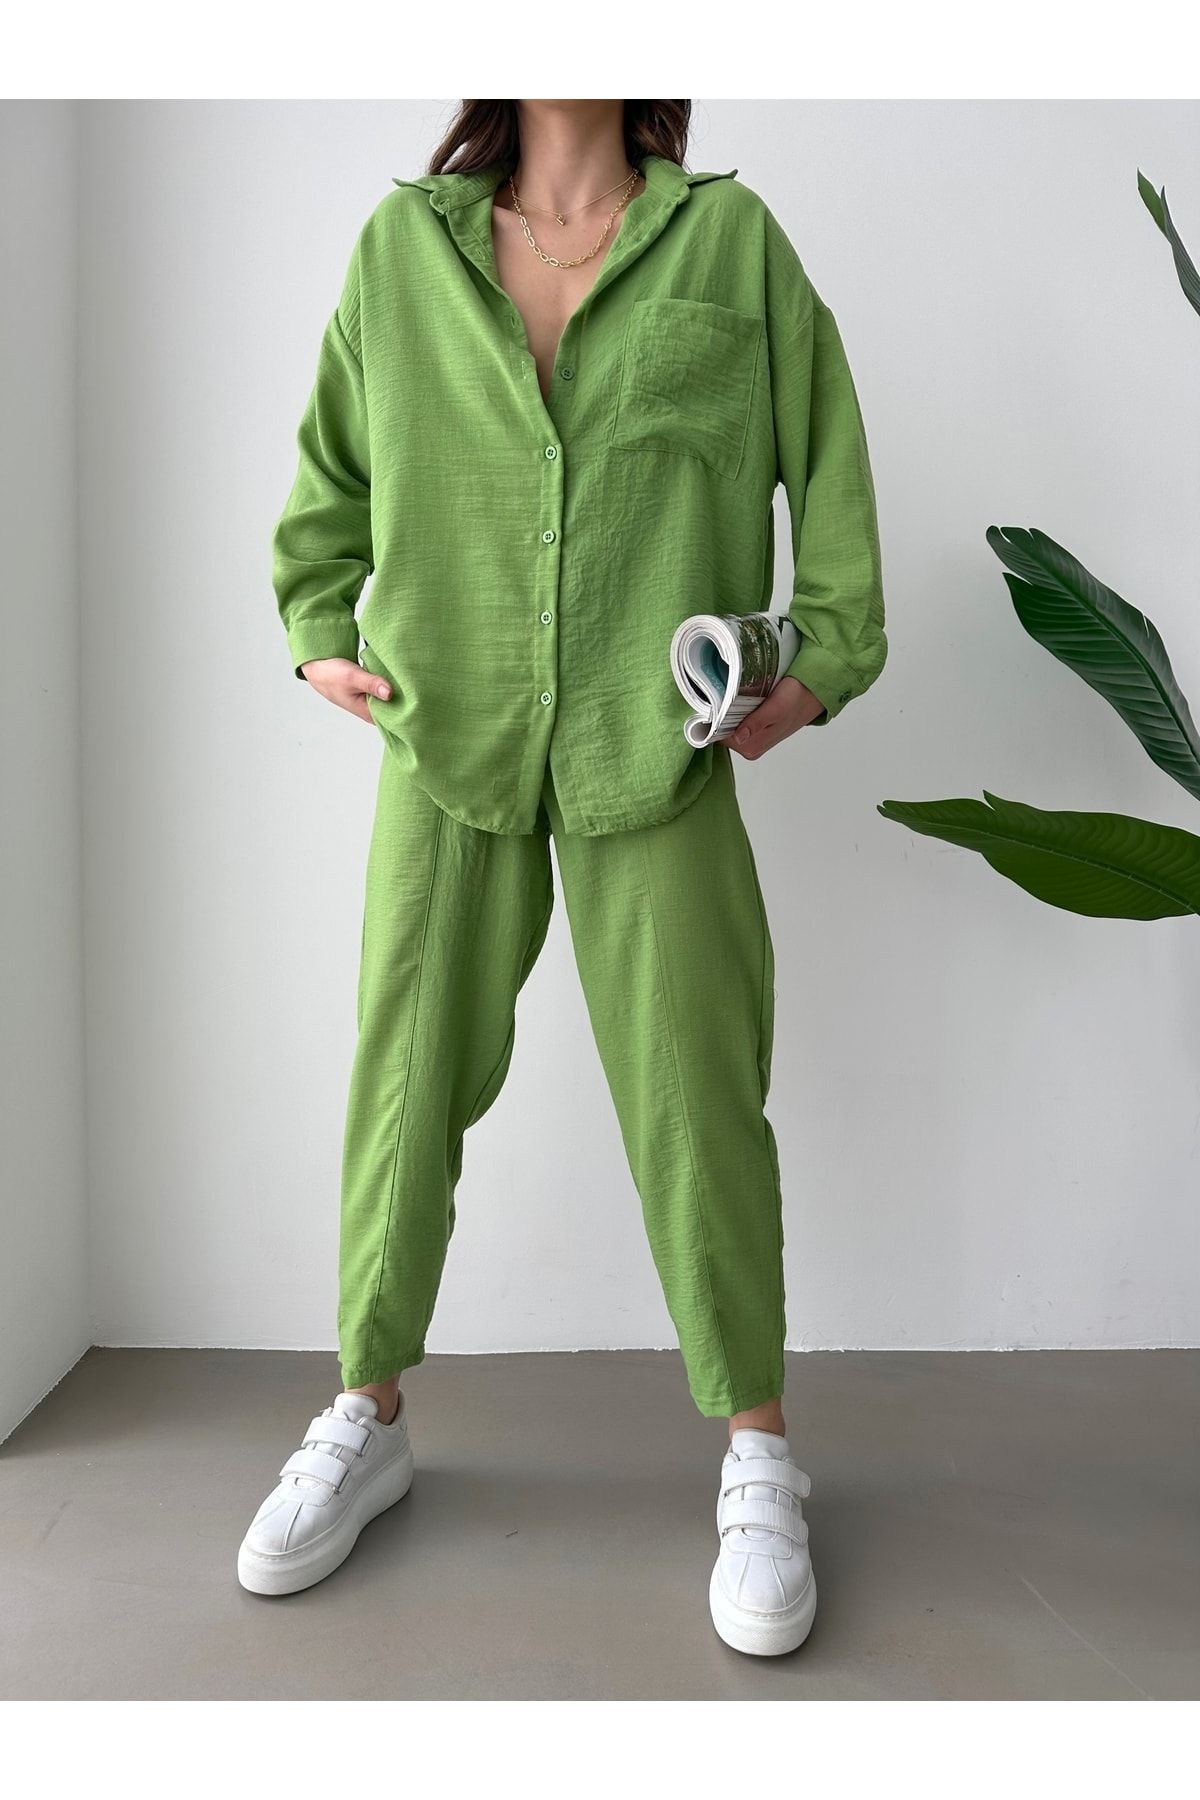 BEJNA Kadın Fıstık Yeşili Oversize Keten Gömlek Pantolon Alt Üst Takım